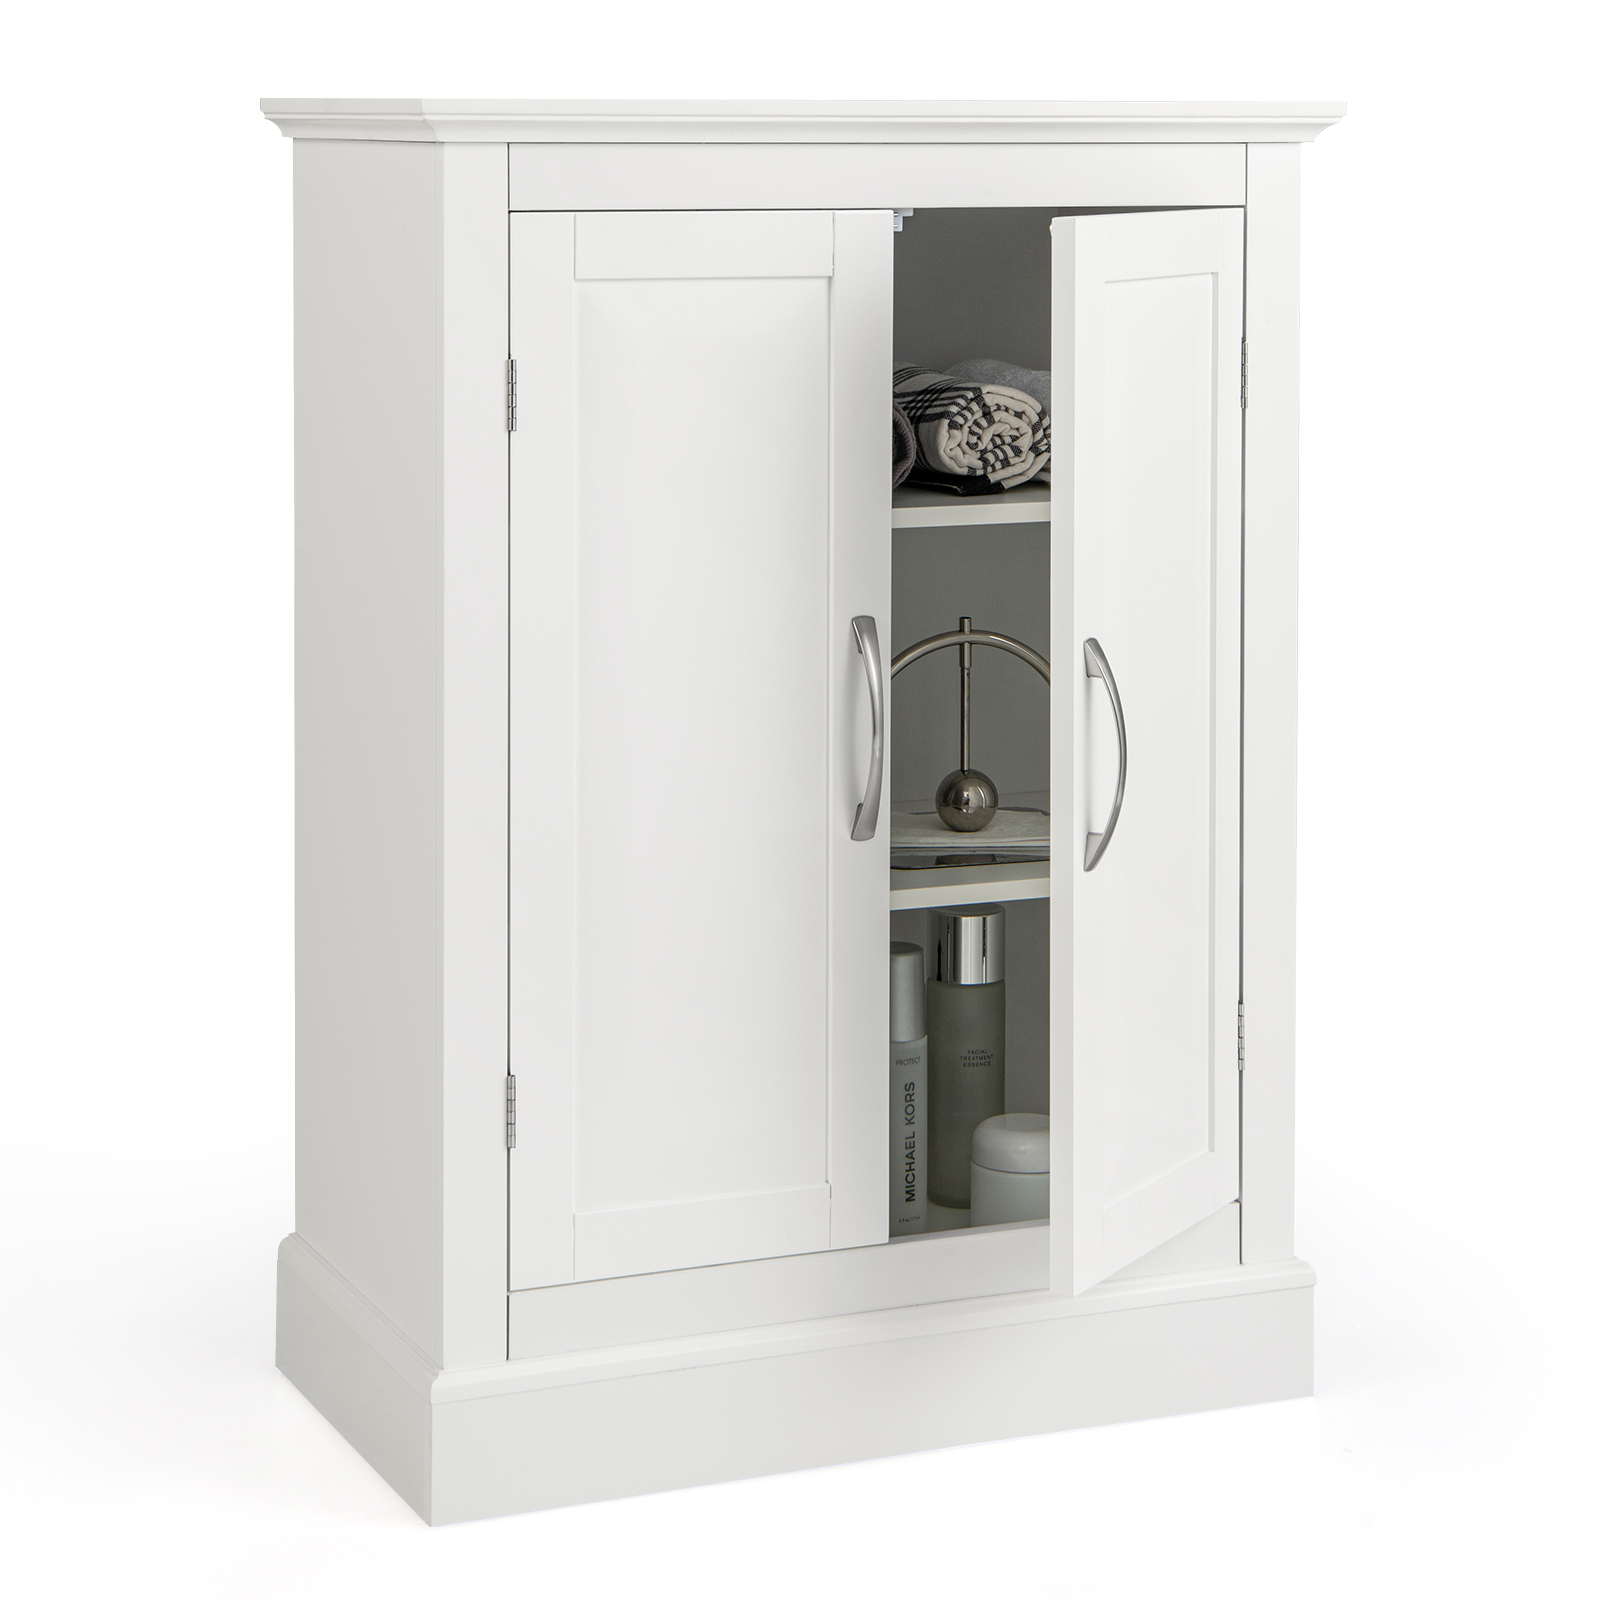 2_Doors_Freestanding_Bathroom_Floor_Cabinet_with_Adjustable_Shelves_White-7.jpg